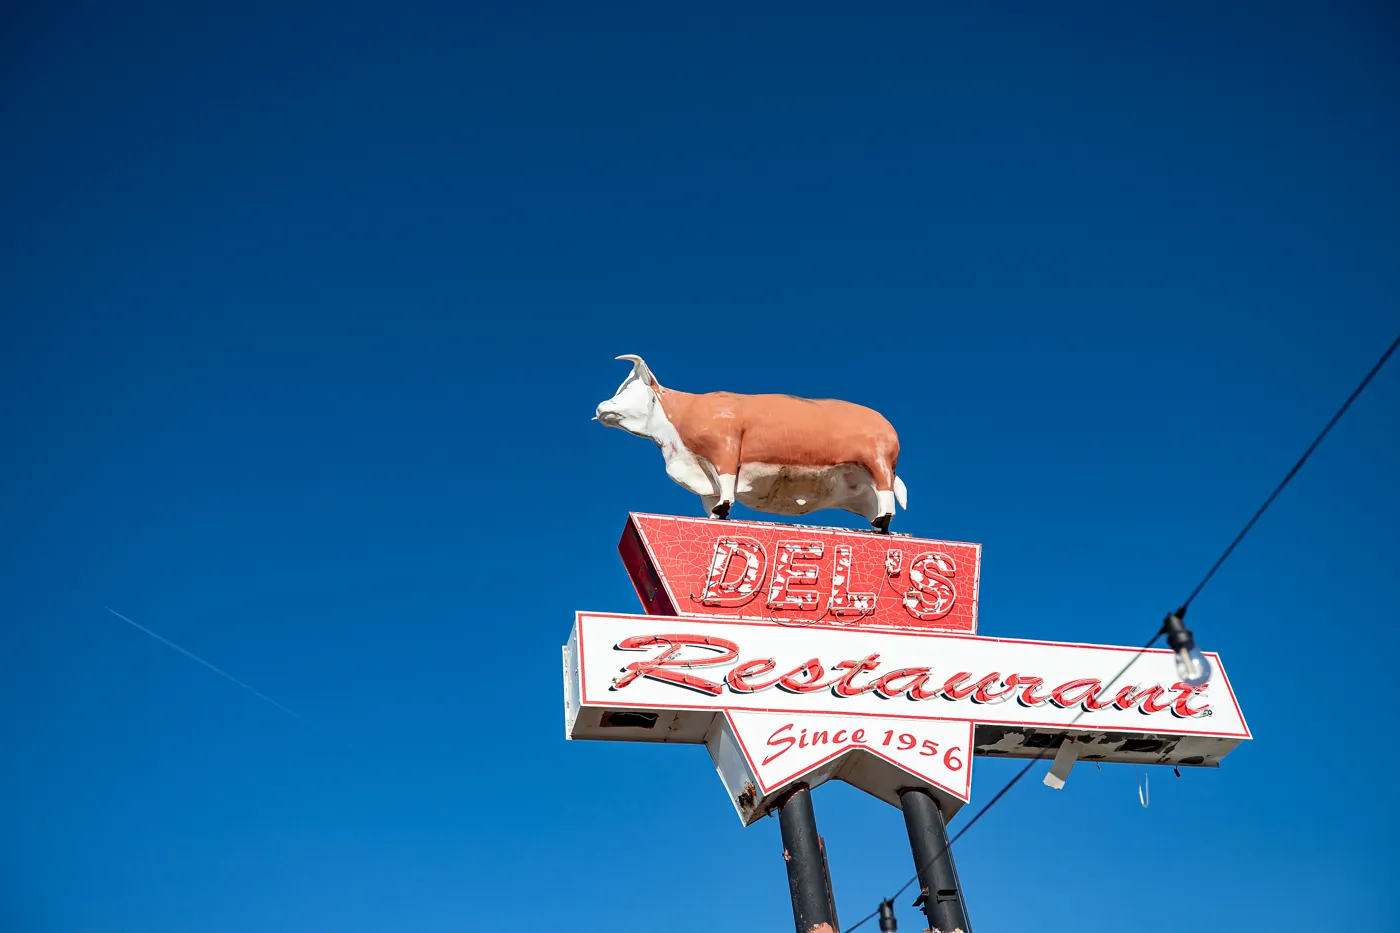 Del's Restaurant in Tucumcari, New Mexico: Route 66 Neon Cow Sign